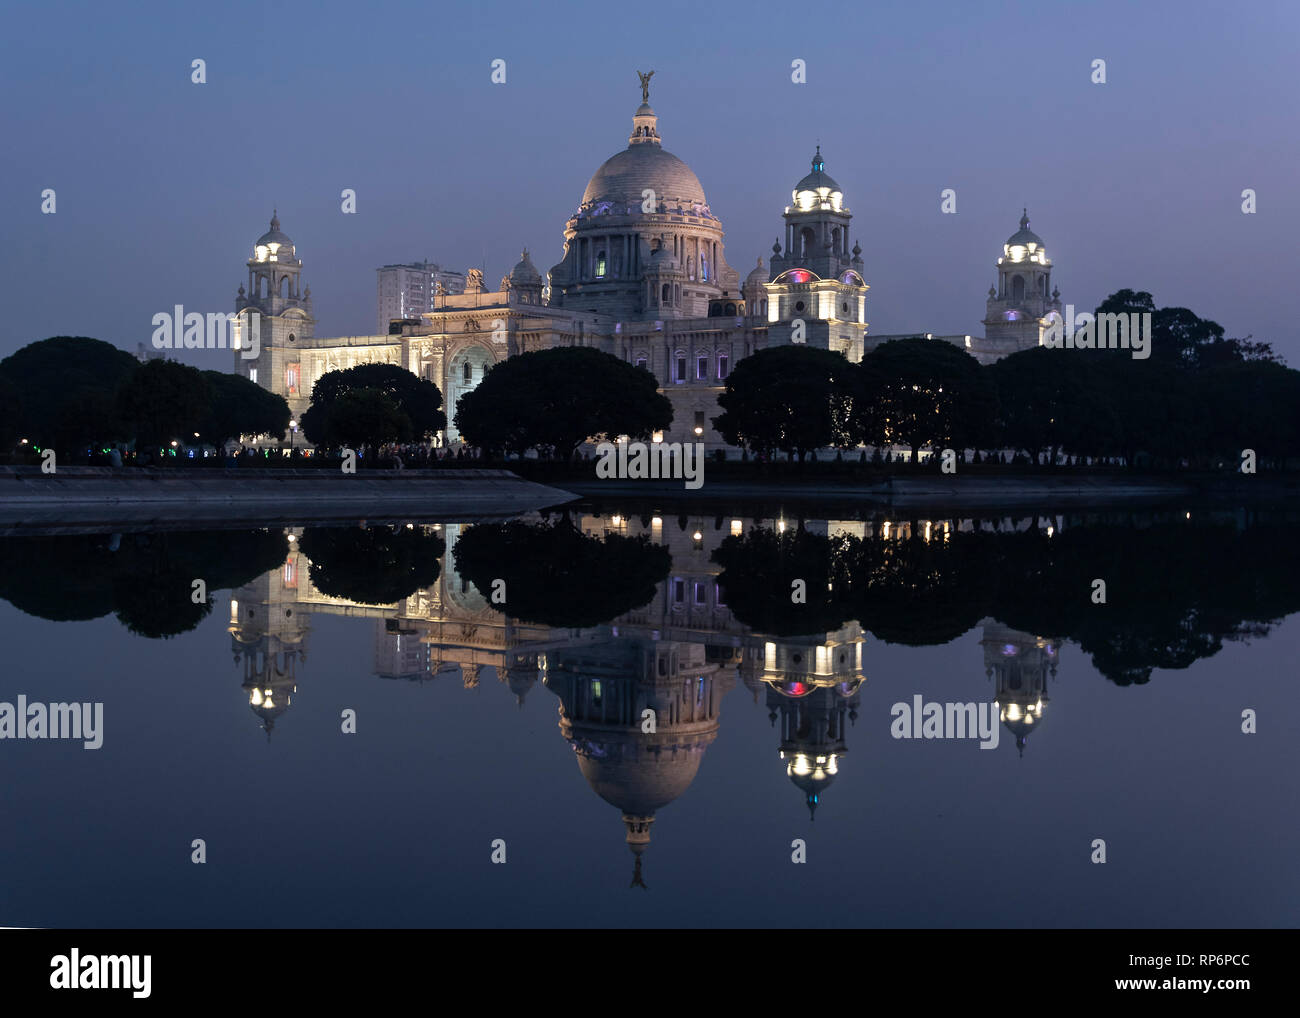 Eine Nacht Dämmerung Abend Blick auf die Queen Victoria Memorial in Kalkutta spiegelt sich im Wasser der westlichen Teich gespiegelt. Stockfoto